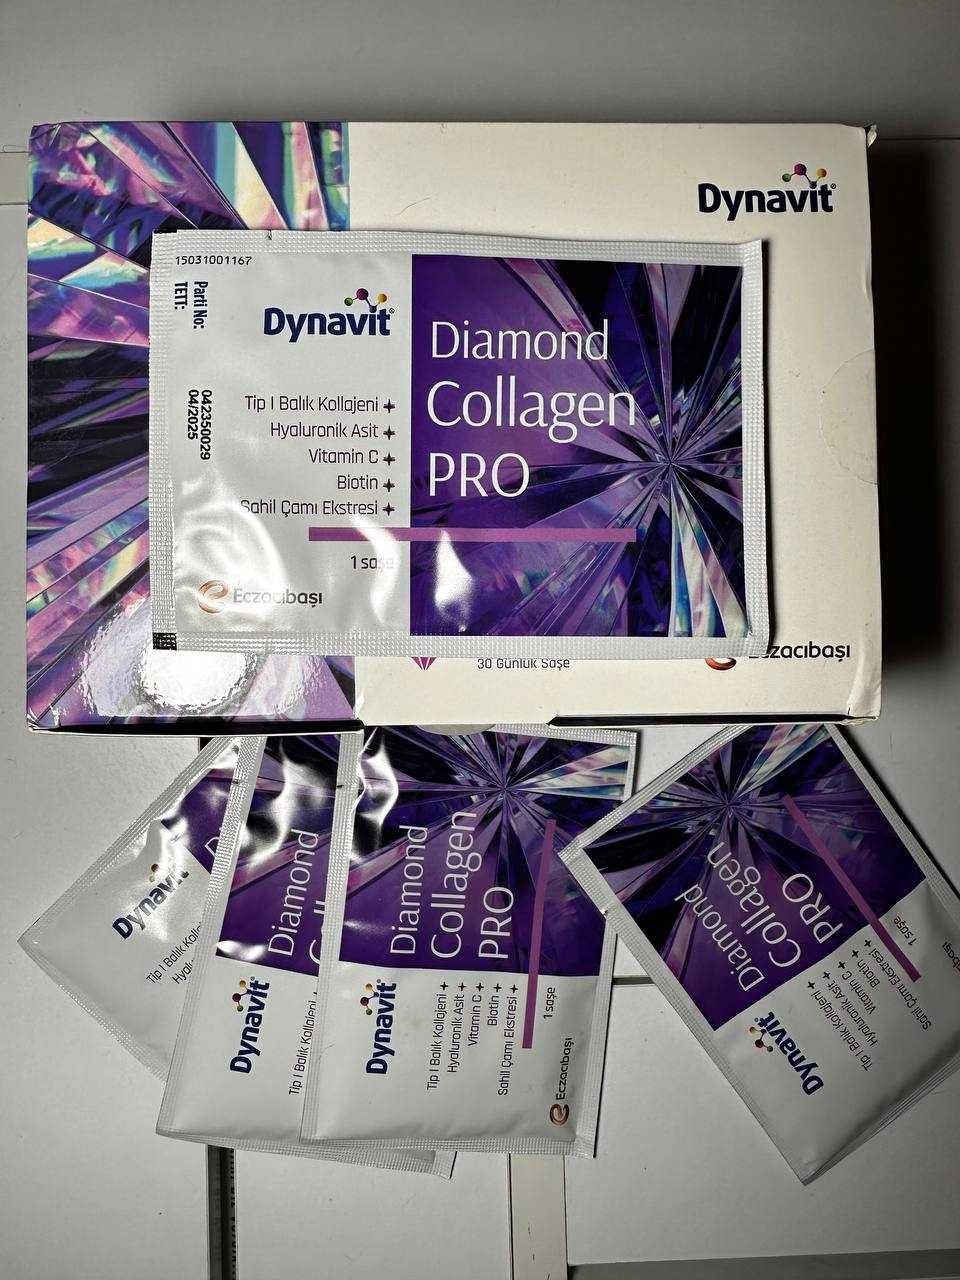 Diamond Collagen Pro DYNAVIT 30 саше для суглобів, шкіри та волося